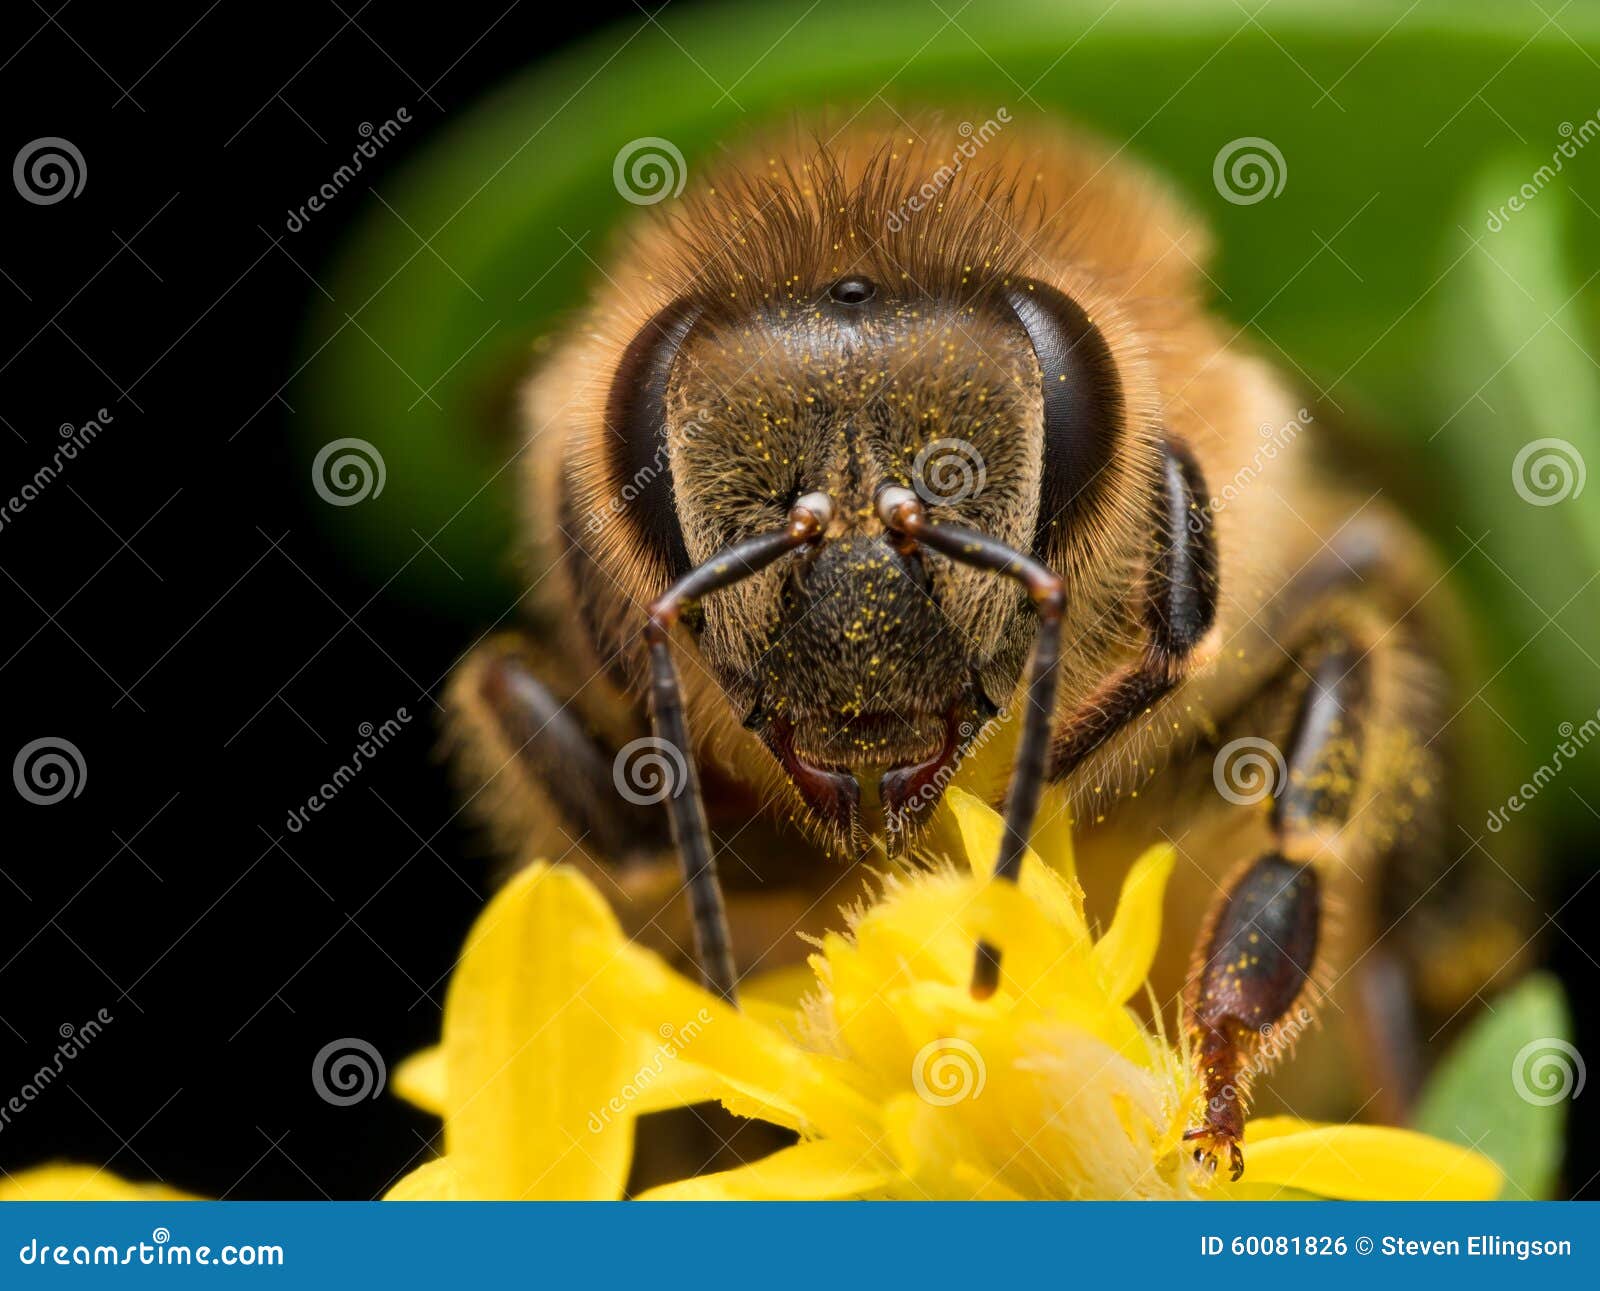 bright golden honeybee extracts pollen from yellow flower